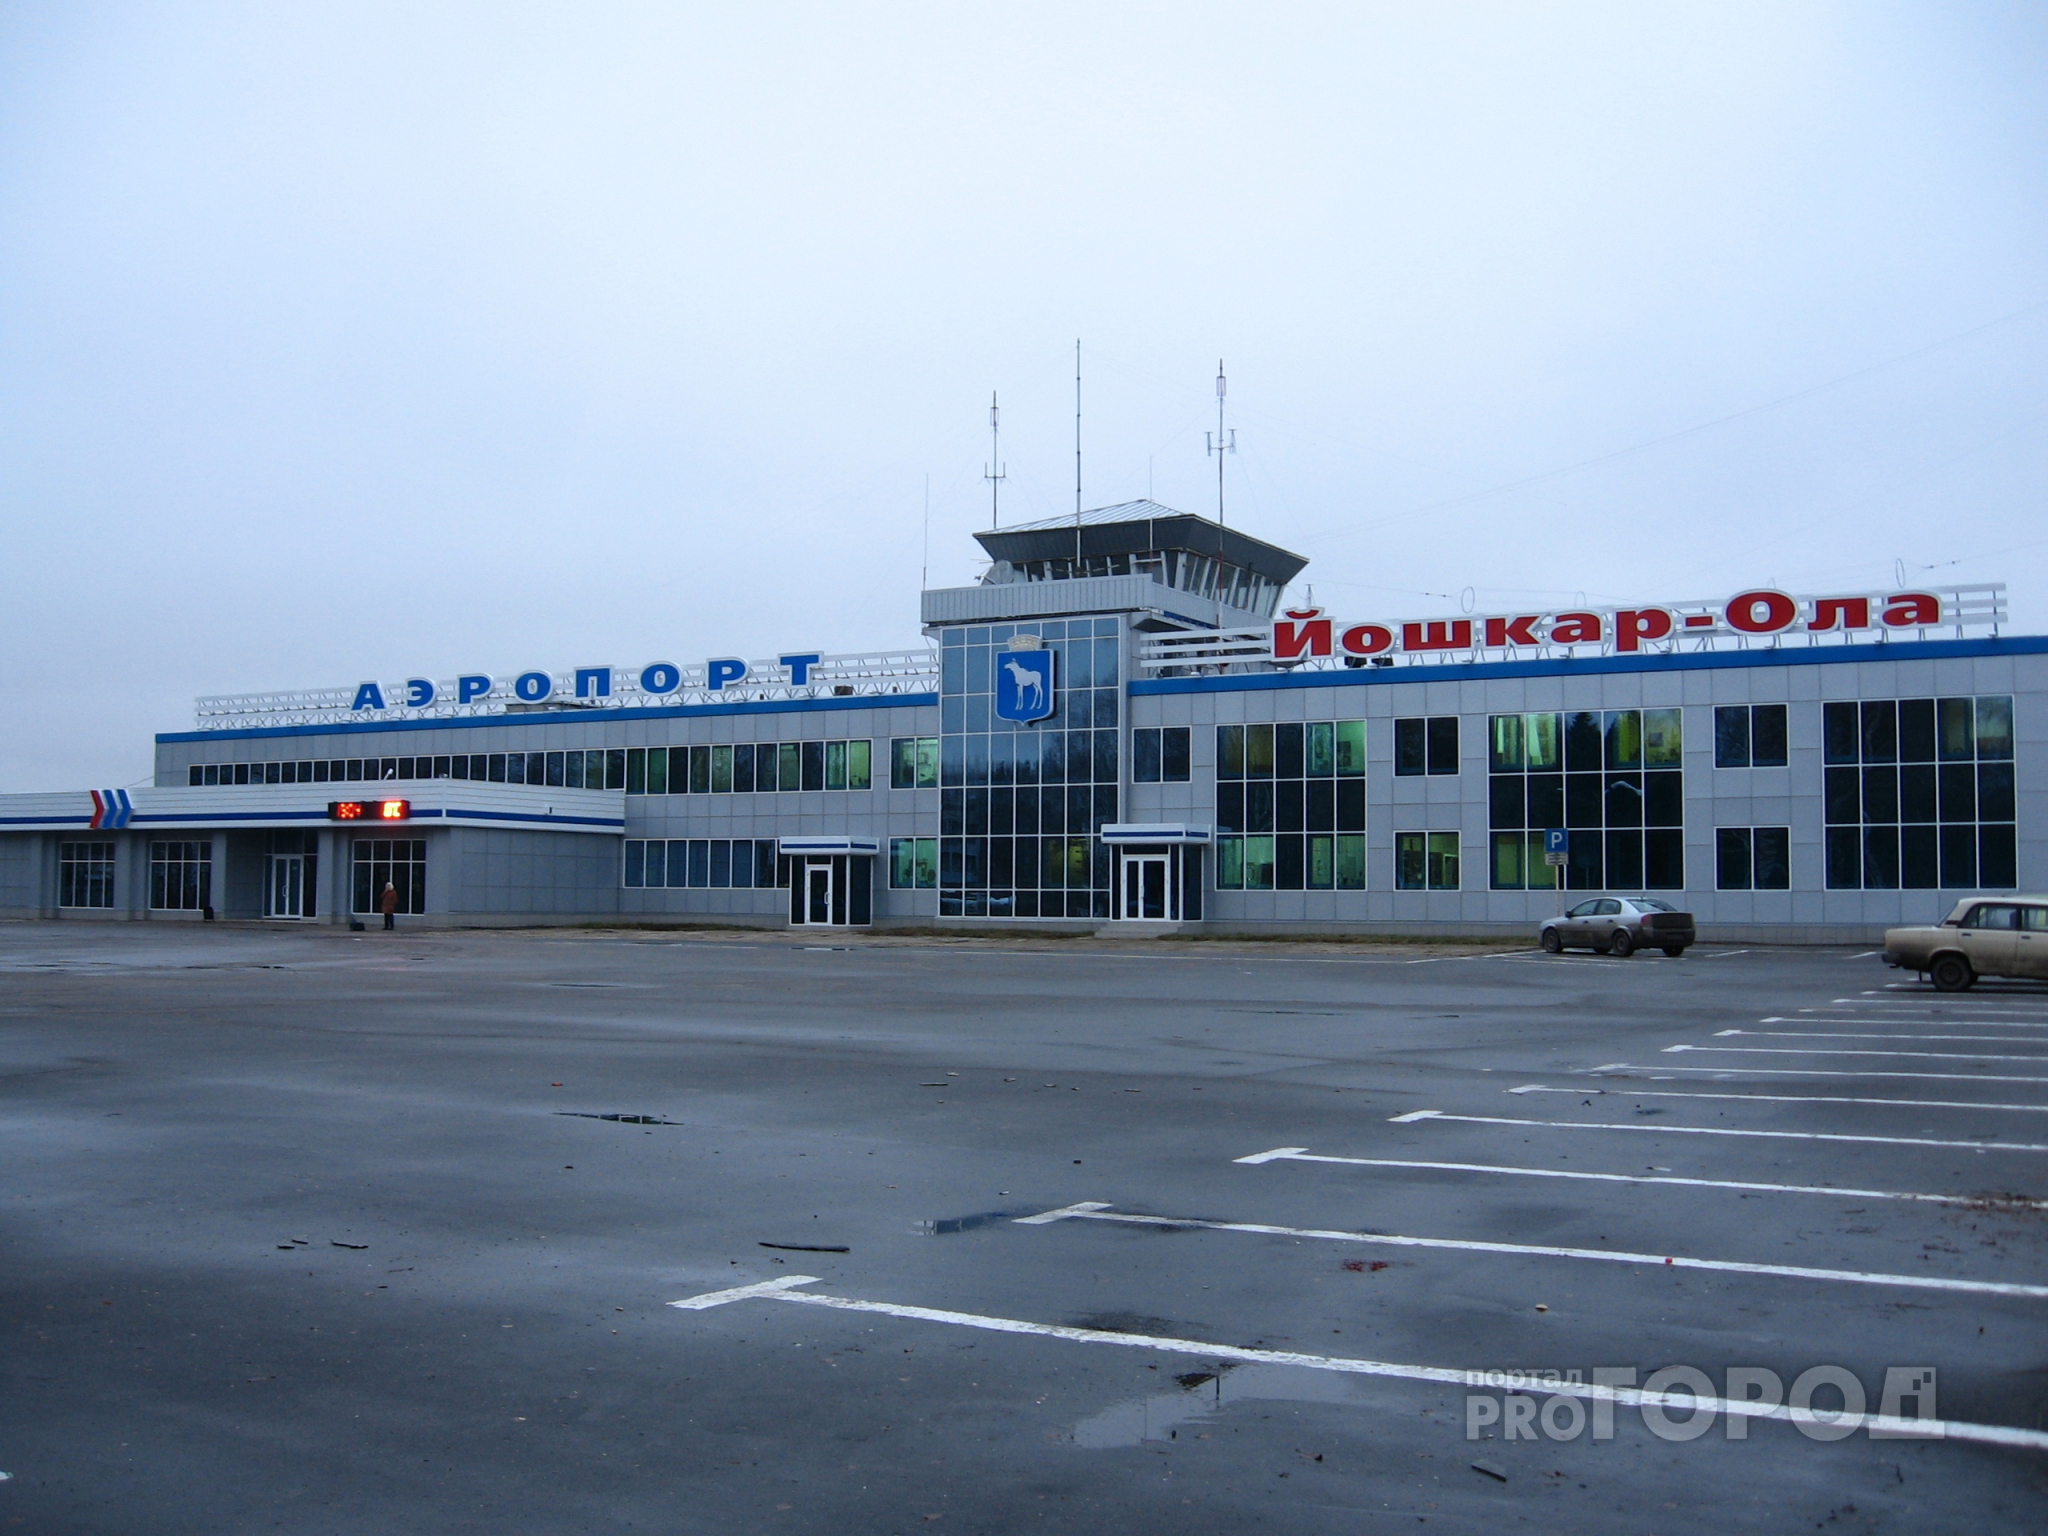 «Разница всего два рубля»: картель собирался «кинуть» аэропорт Йошкар-Олы на деньги